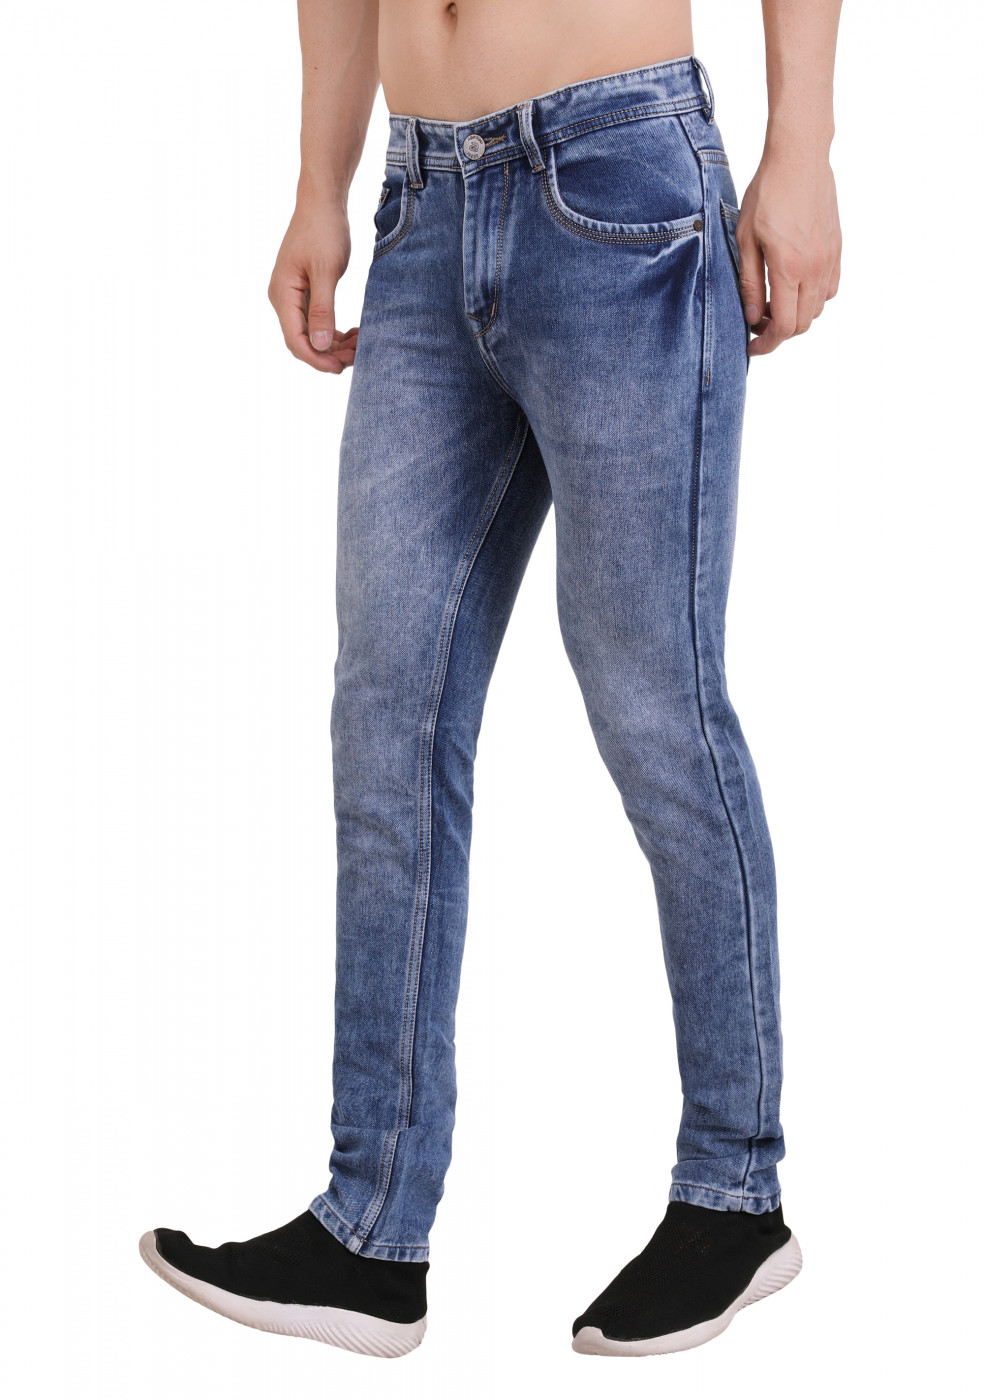 Blue Denim Jeans Slim Fit For Men